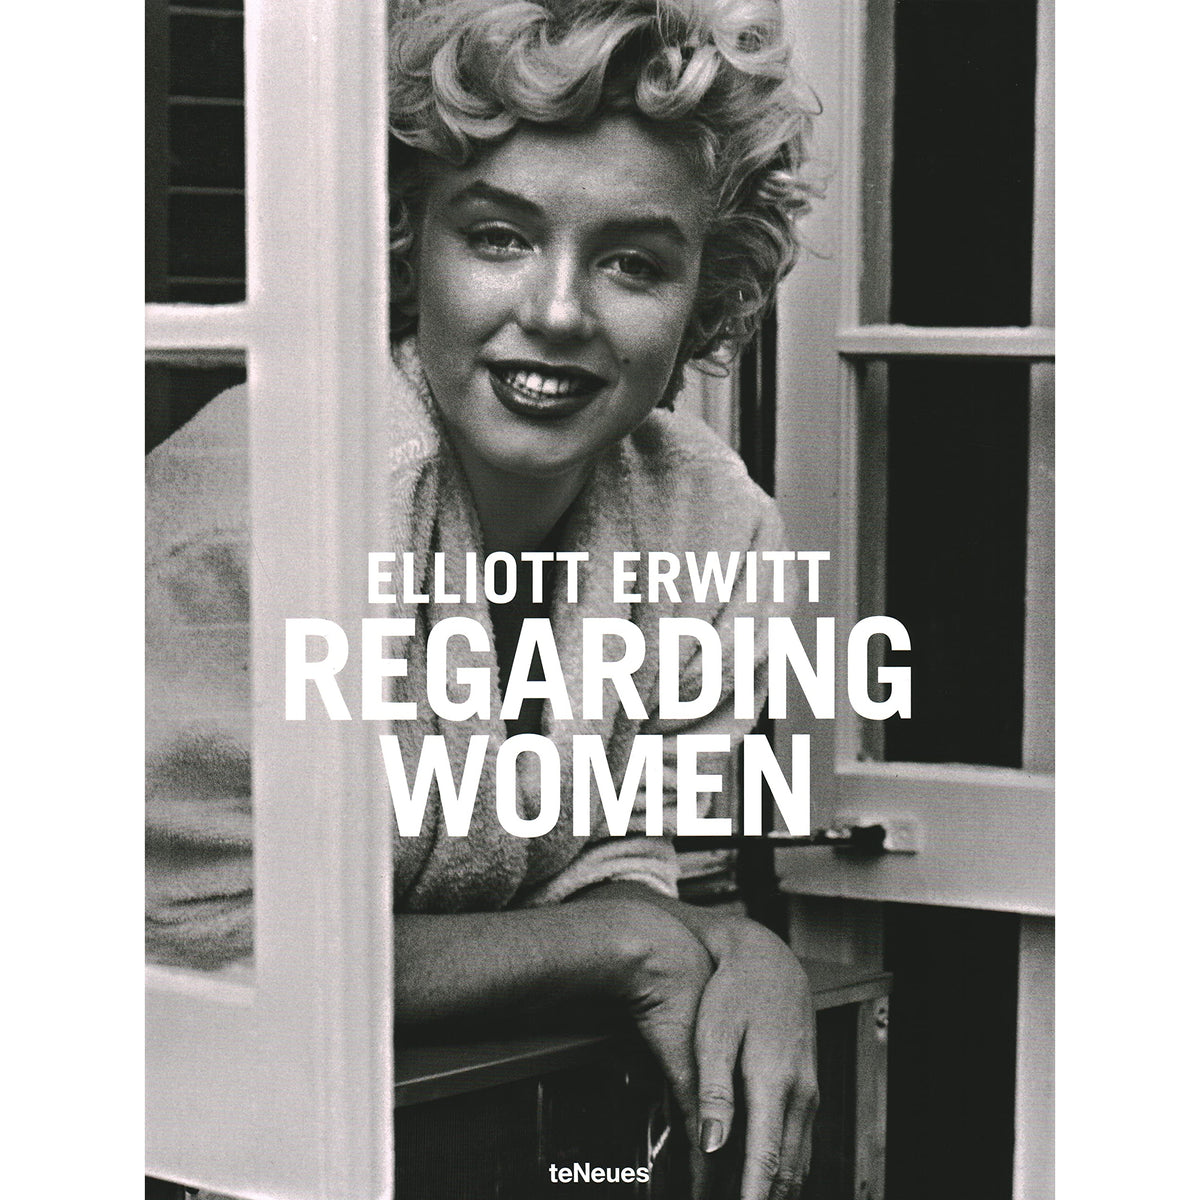 Regarding Women by Elliott Erwitt